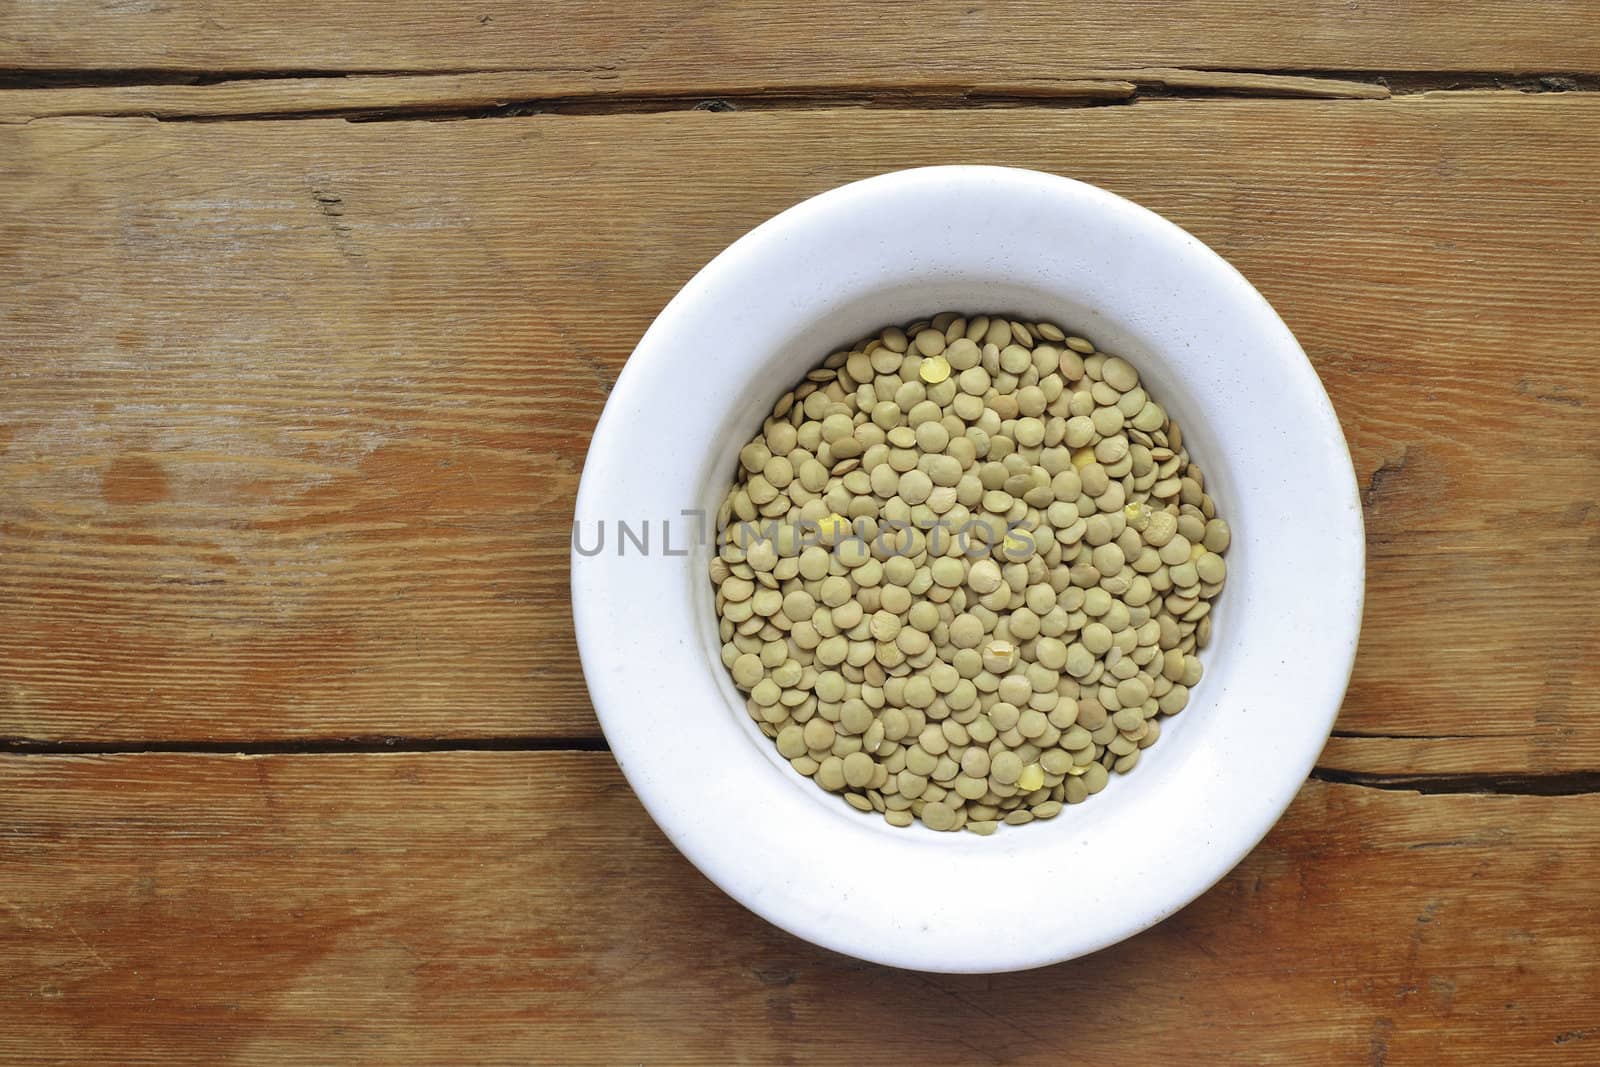 raw dry lentil beans in white bowl on vintage wooden table; focus on lentil